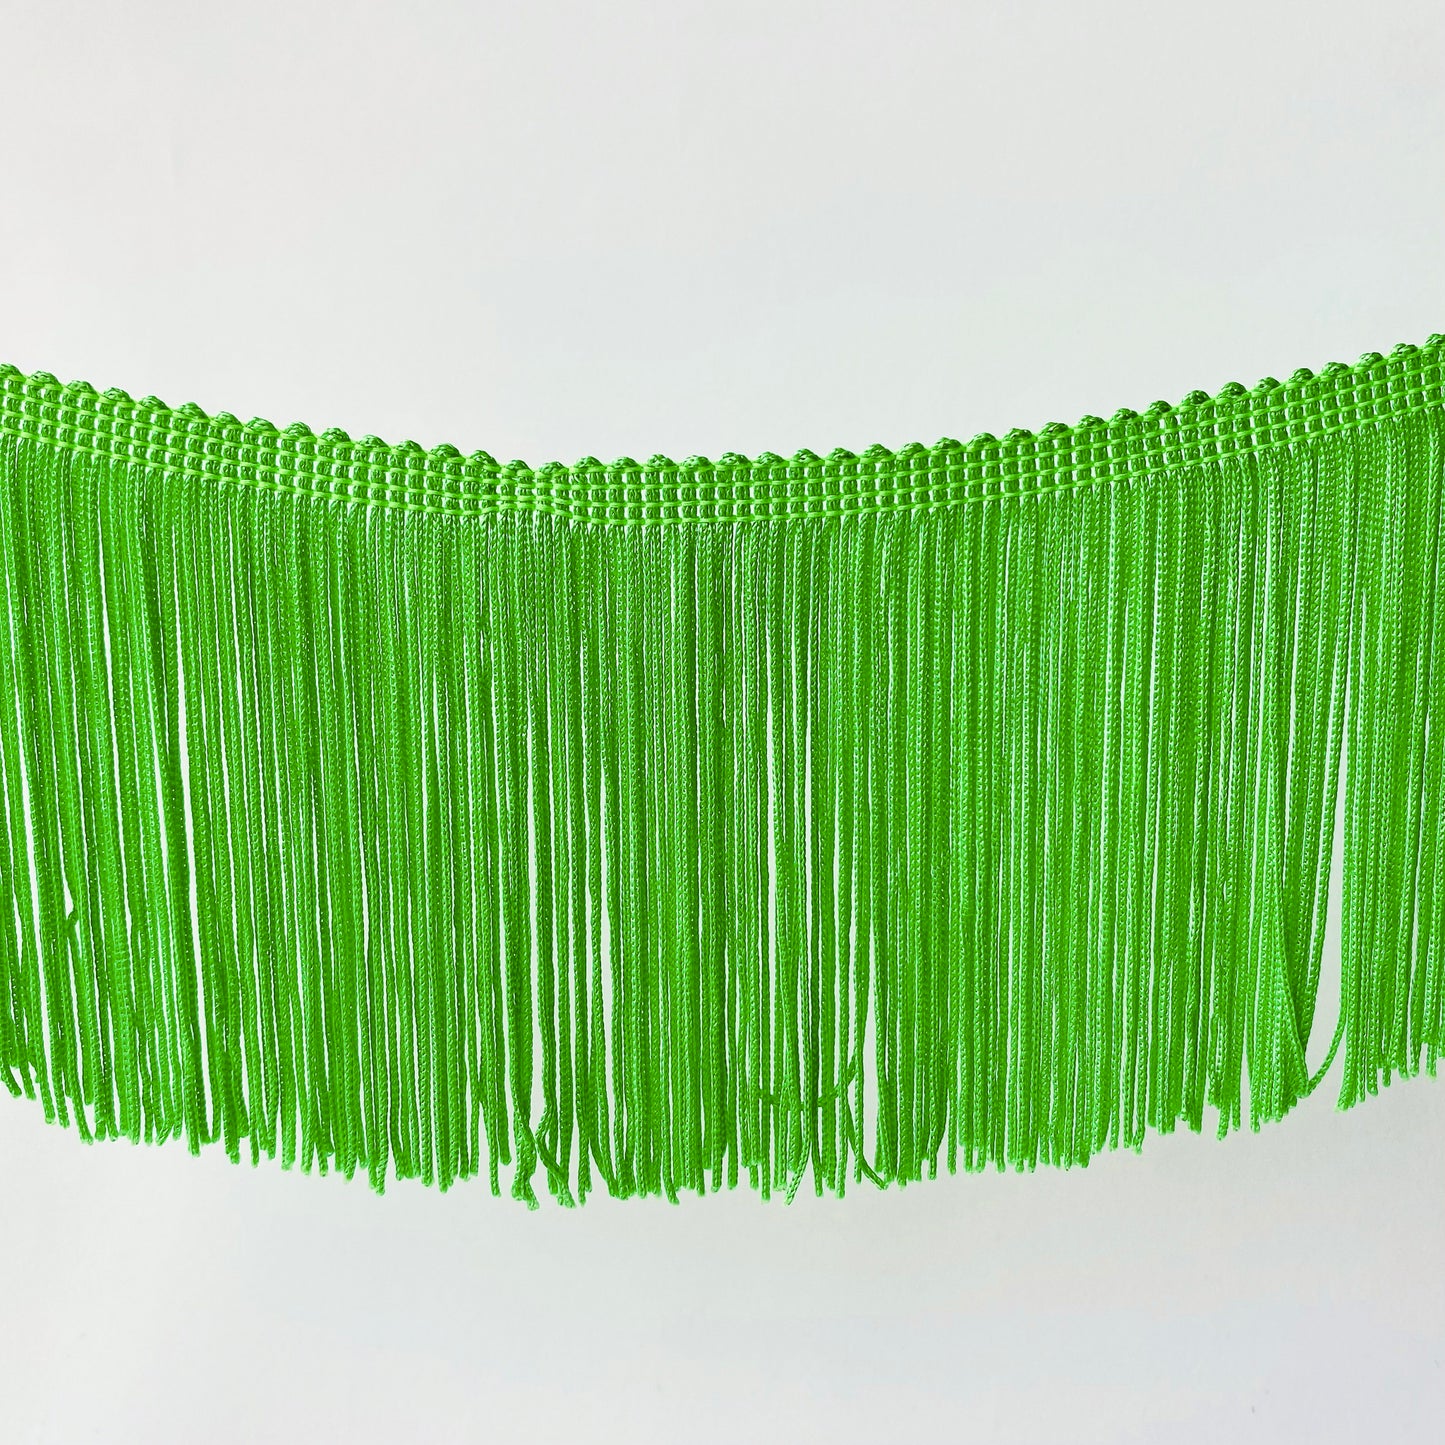 10cm Green Silky Soft Rayon Cut Fringe